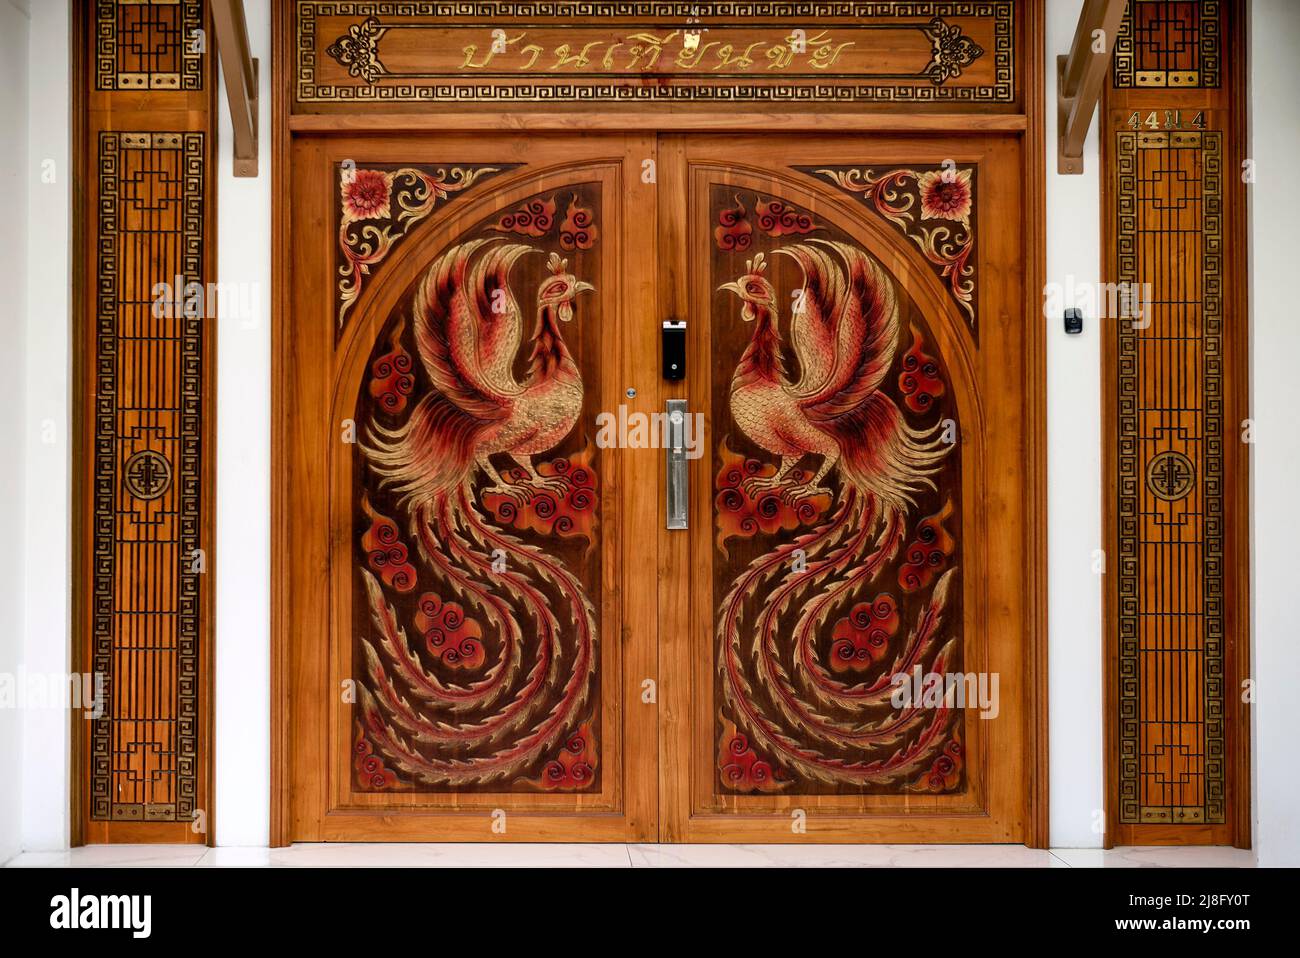 Detalle de puerta de madera tallada con figuras de pollo gallo con un impresionante plumaje de Tailandia en el sudeste asiático Foto de stock